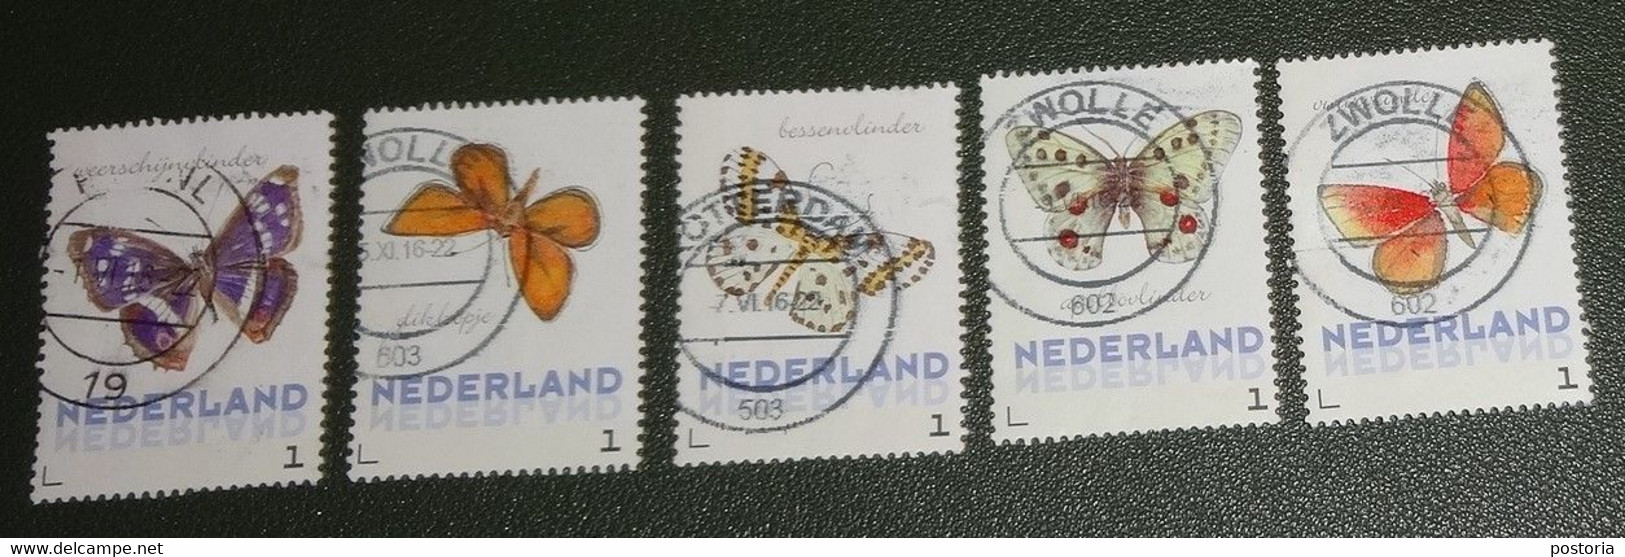 Nederland - NVPH - Uit 3012-Ac-4 - 2014 - Persoonlijke Gebruikt - Brinkman - Vlinders Zomer - Persoonlijke Postzegels